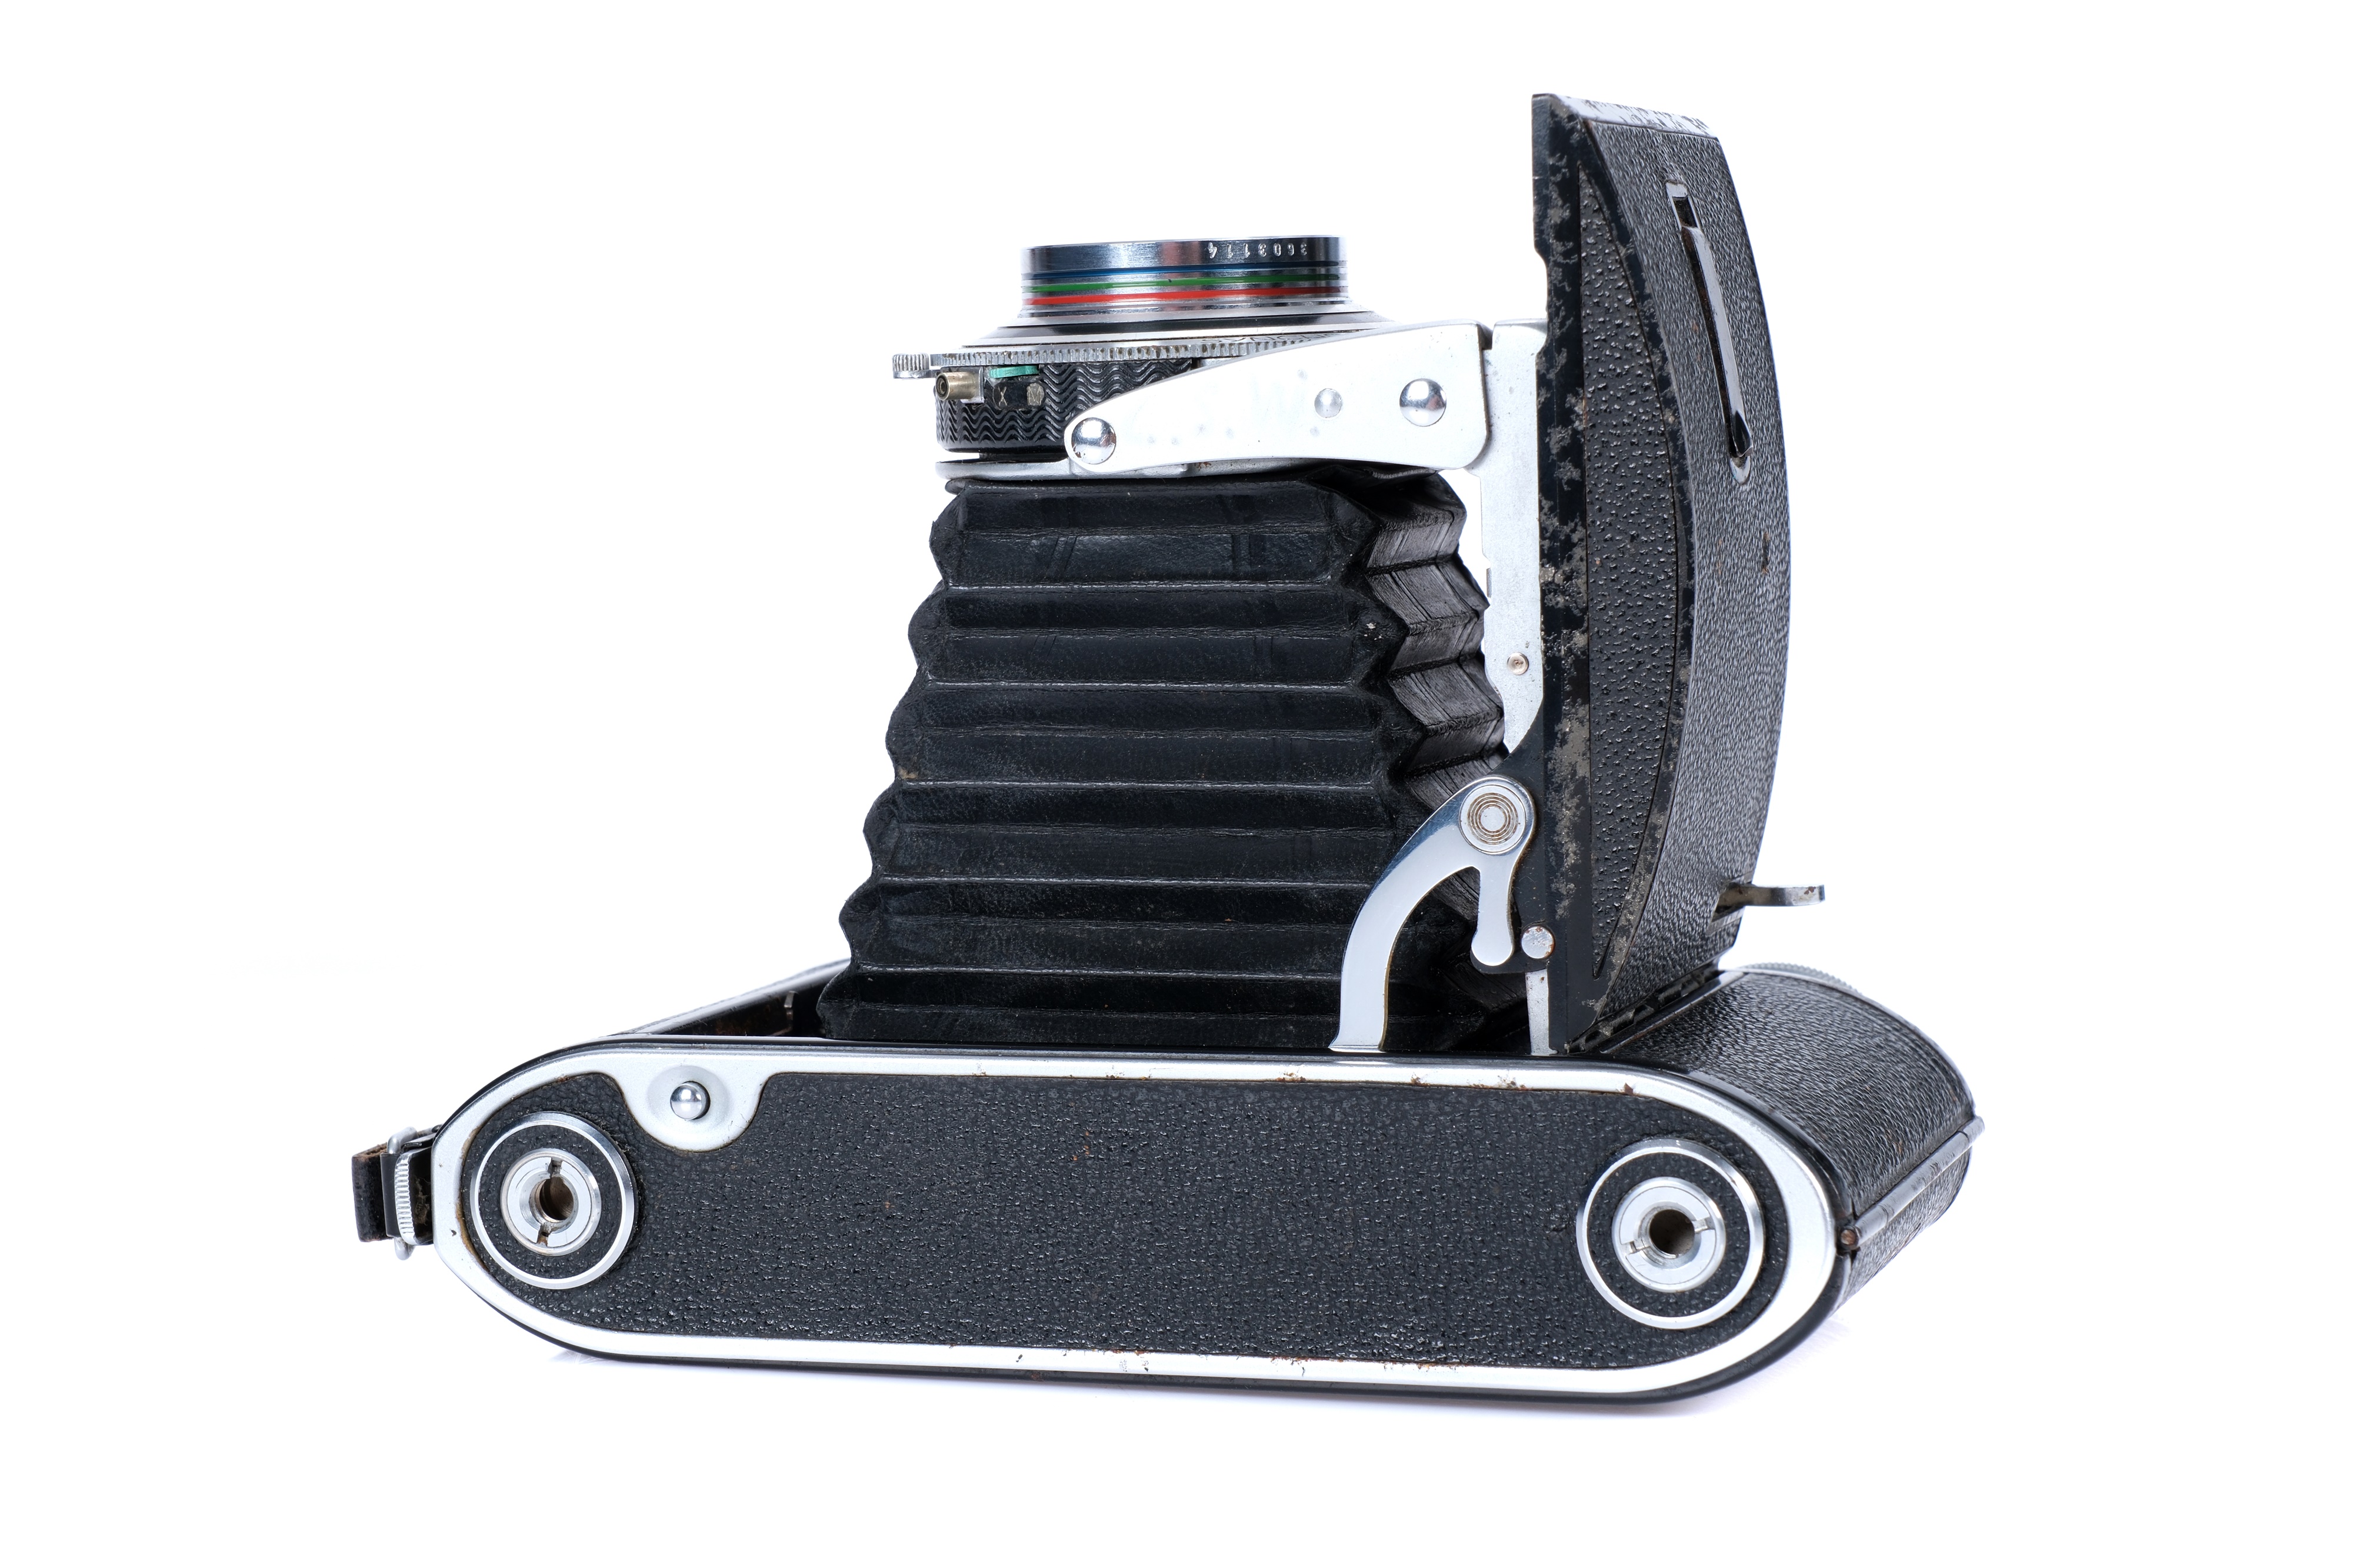 A Voigtlander Bessa II Medium Format Rangefinder Camera, - Image 3 of 4